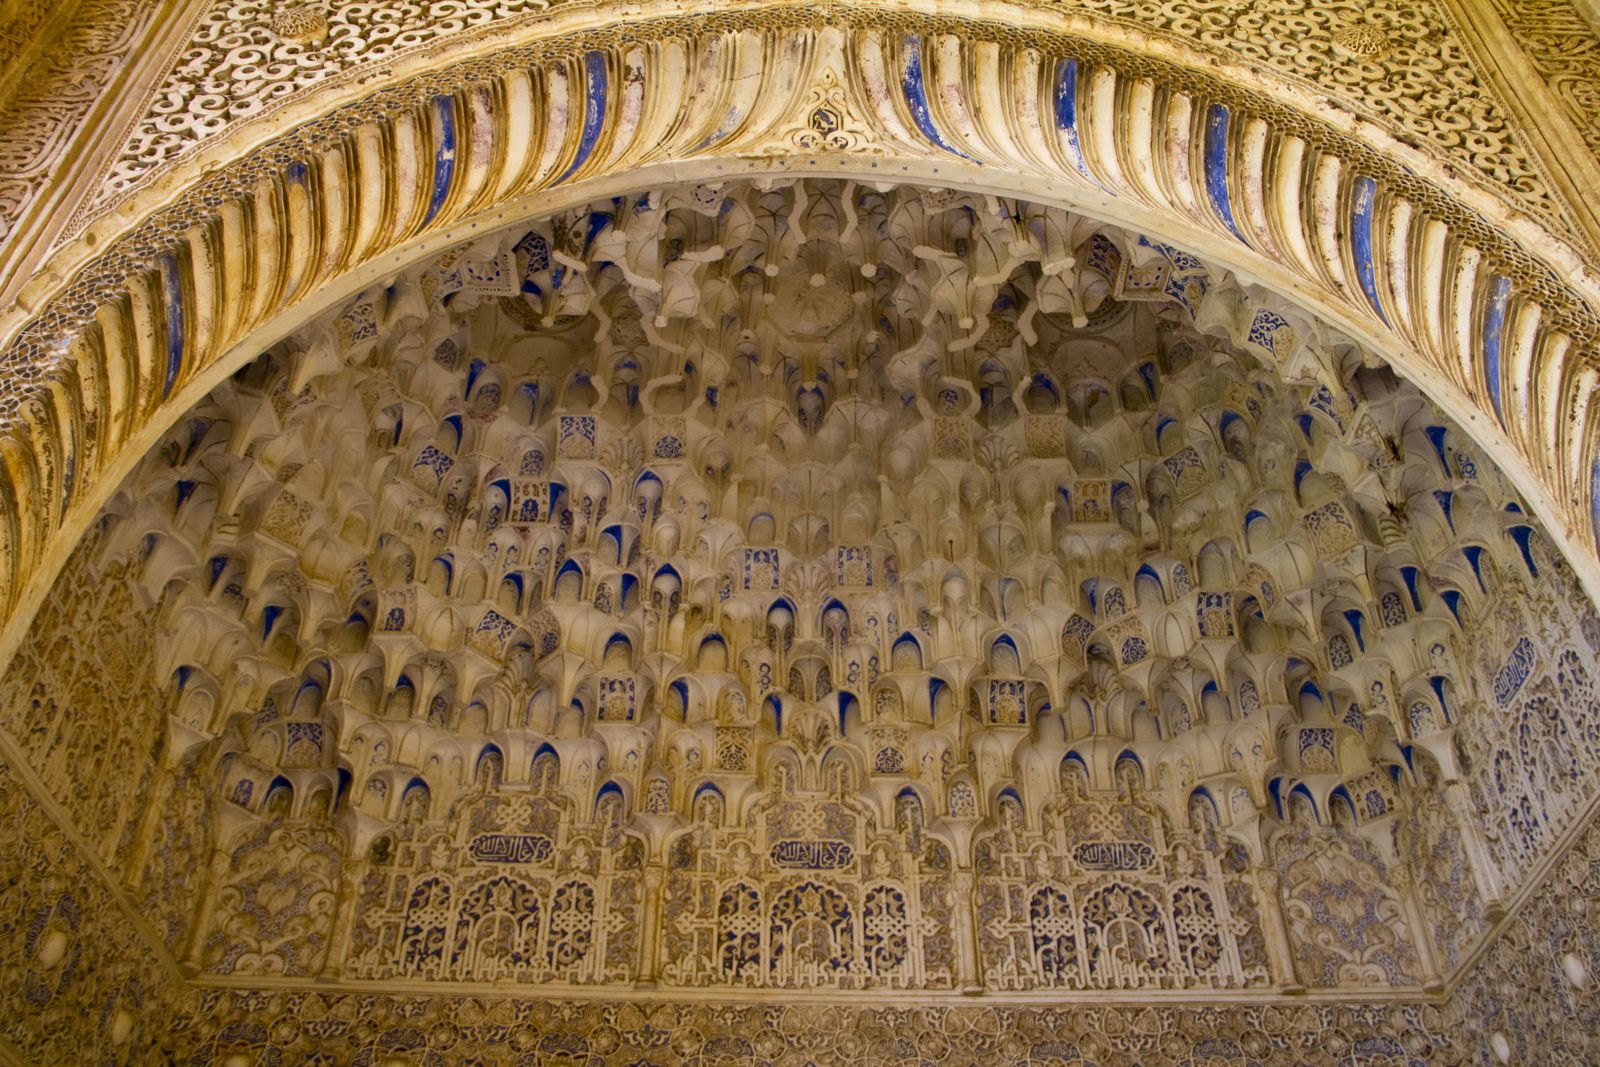 Des portes à arc outrepassé, des azulejos, presque toutes ces photos ont été prises dans les palais Nasrides.